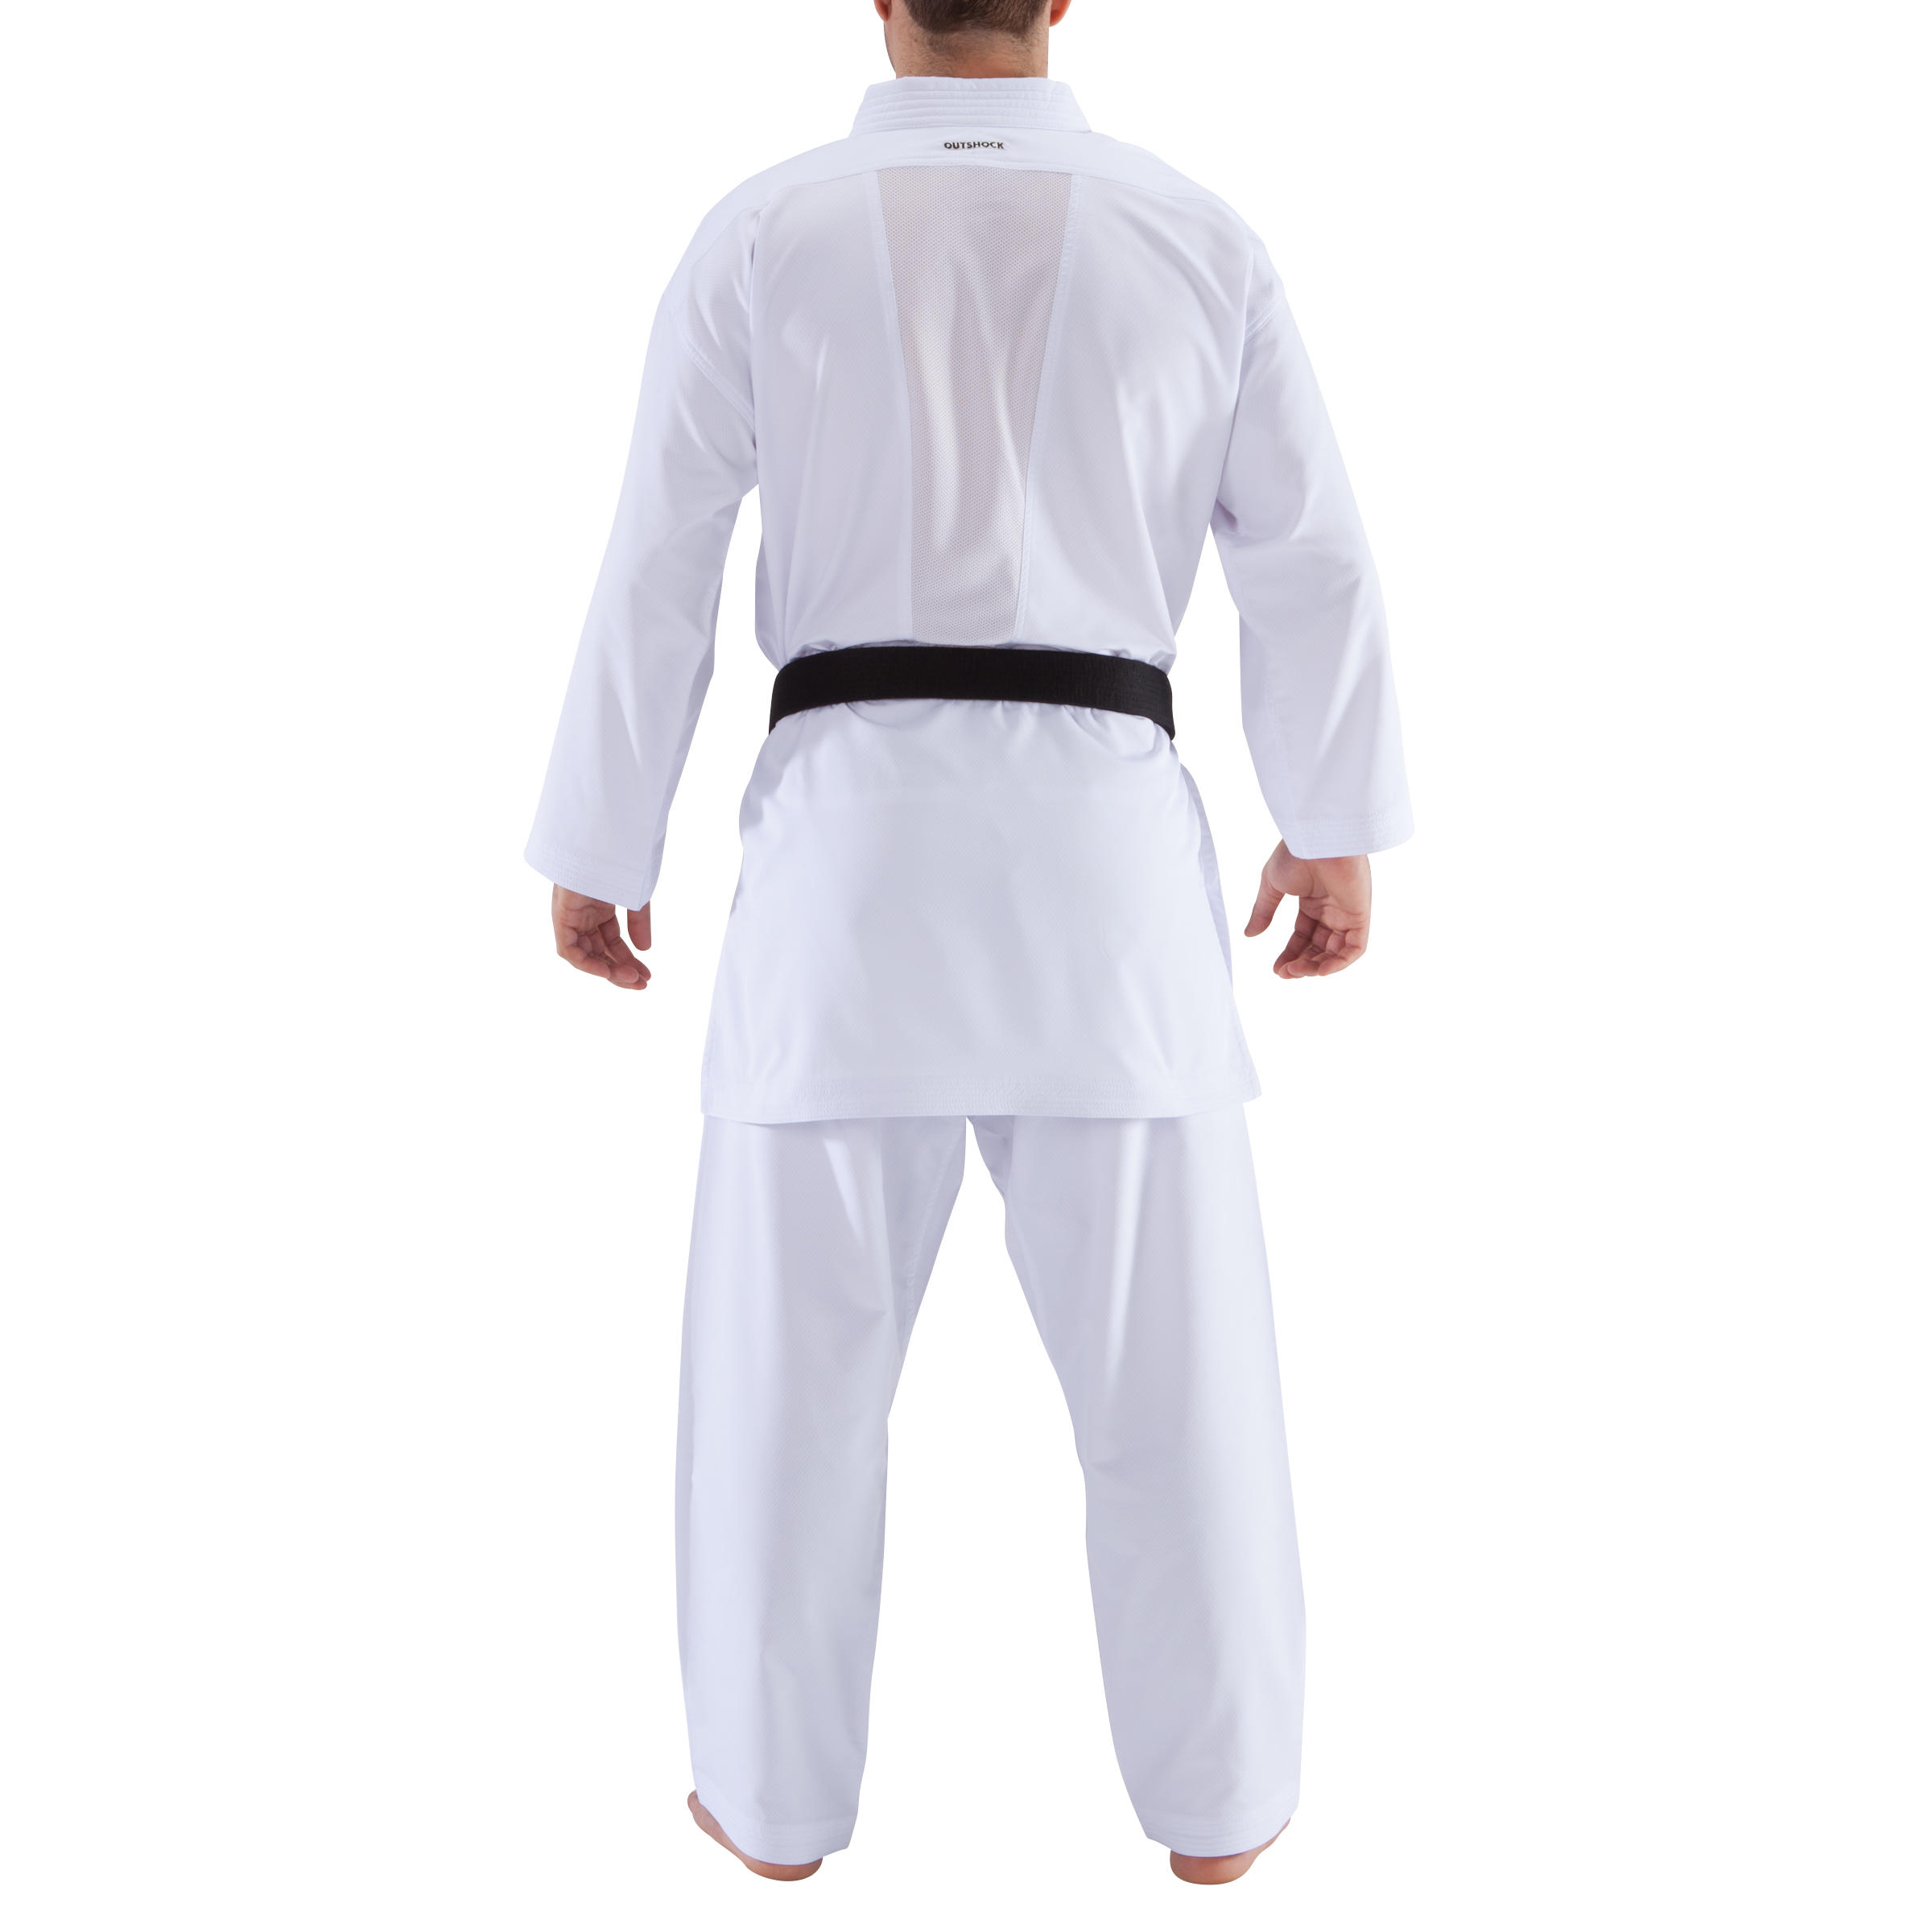 900 Adult Kumite Karate Uniform 4/13